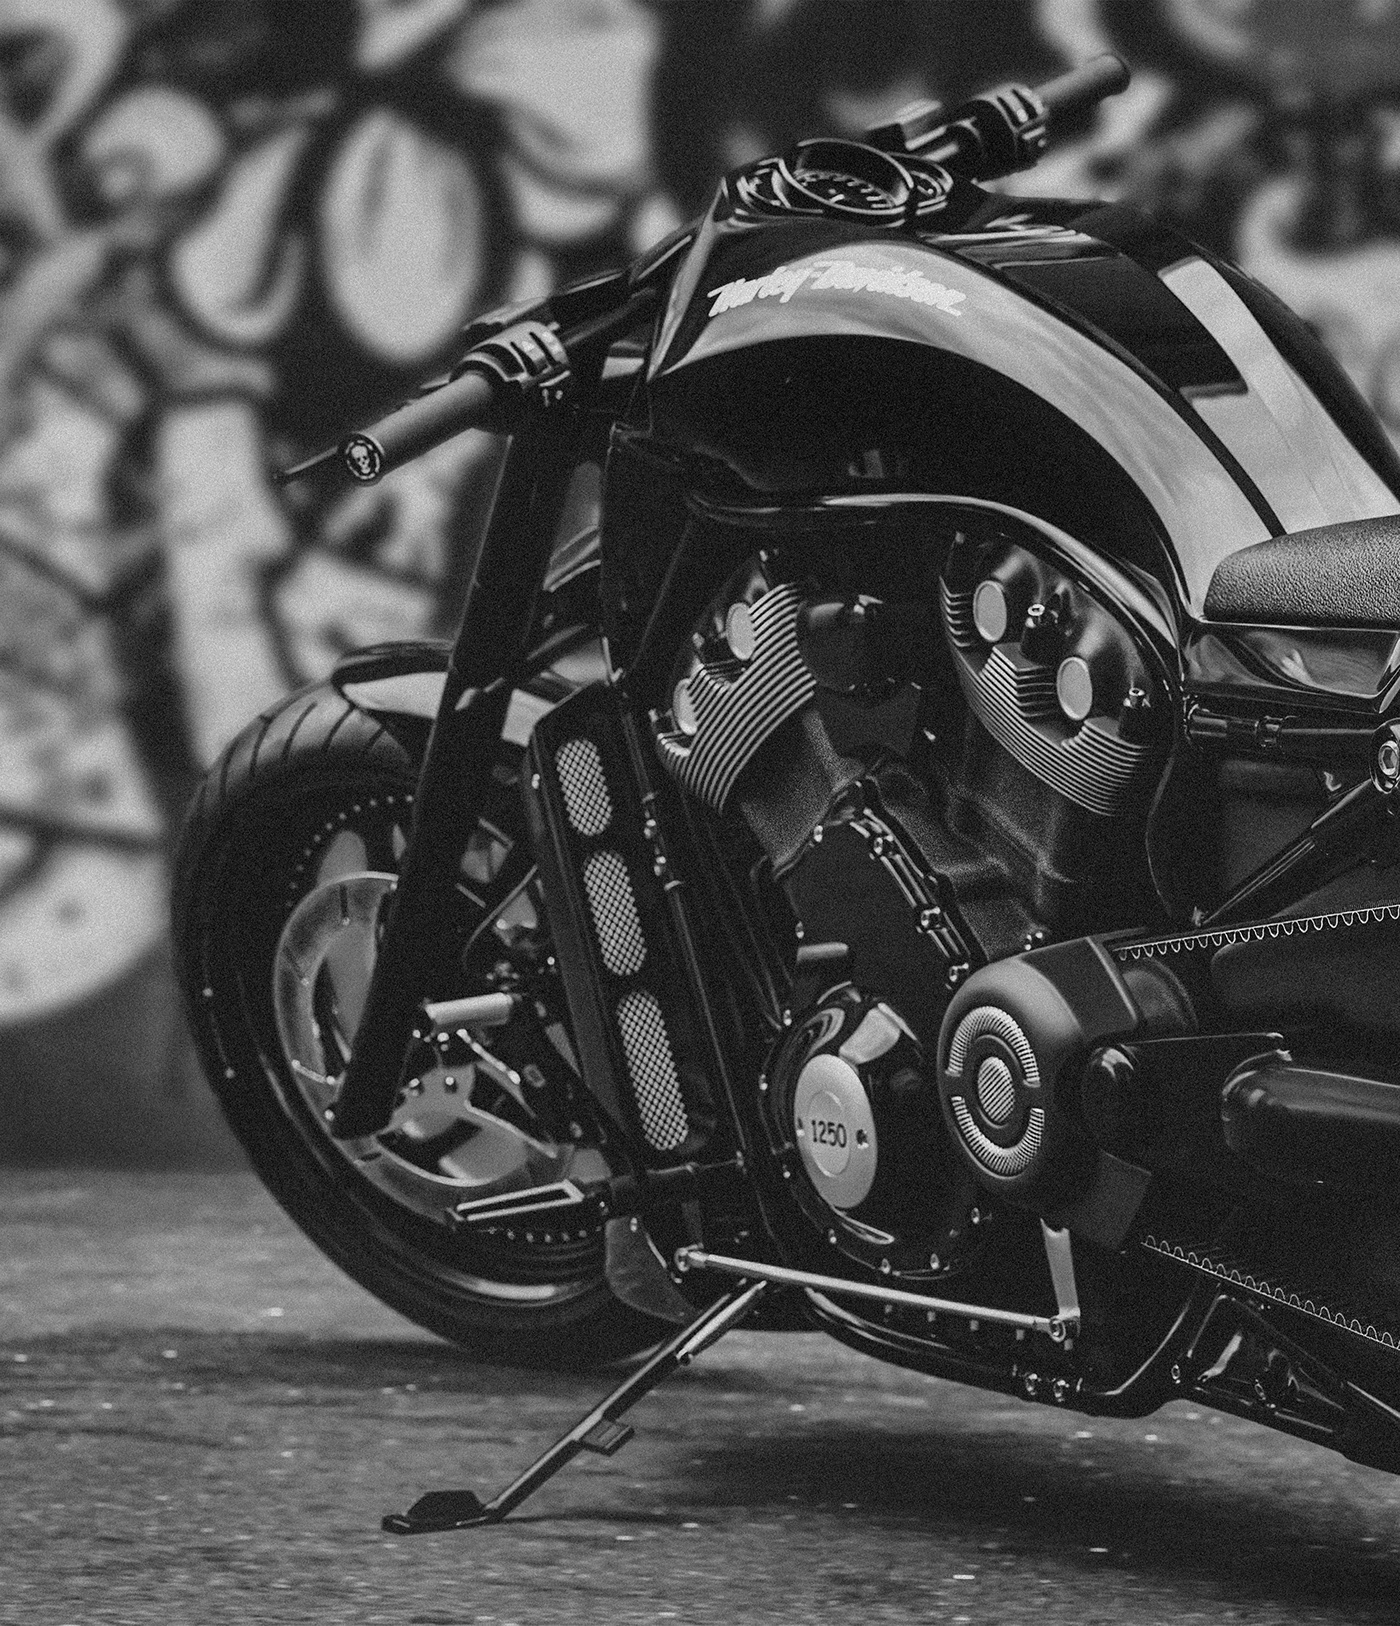 Harley Davidson CGI 3D automotive   Vehicle motorcycle blender model Render Vizualization